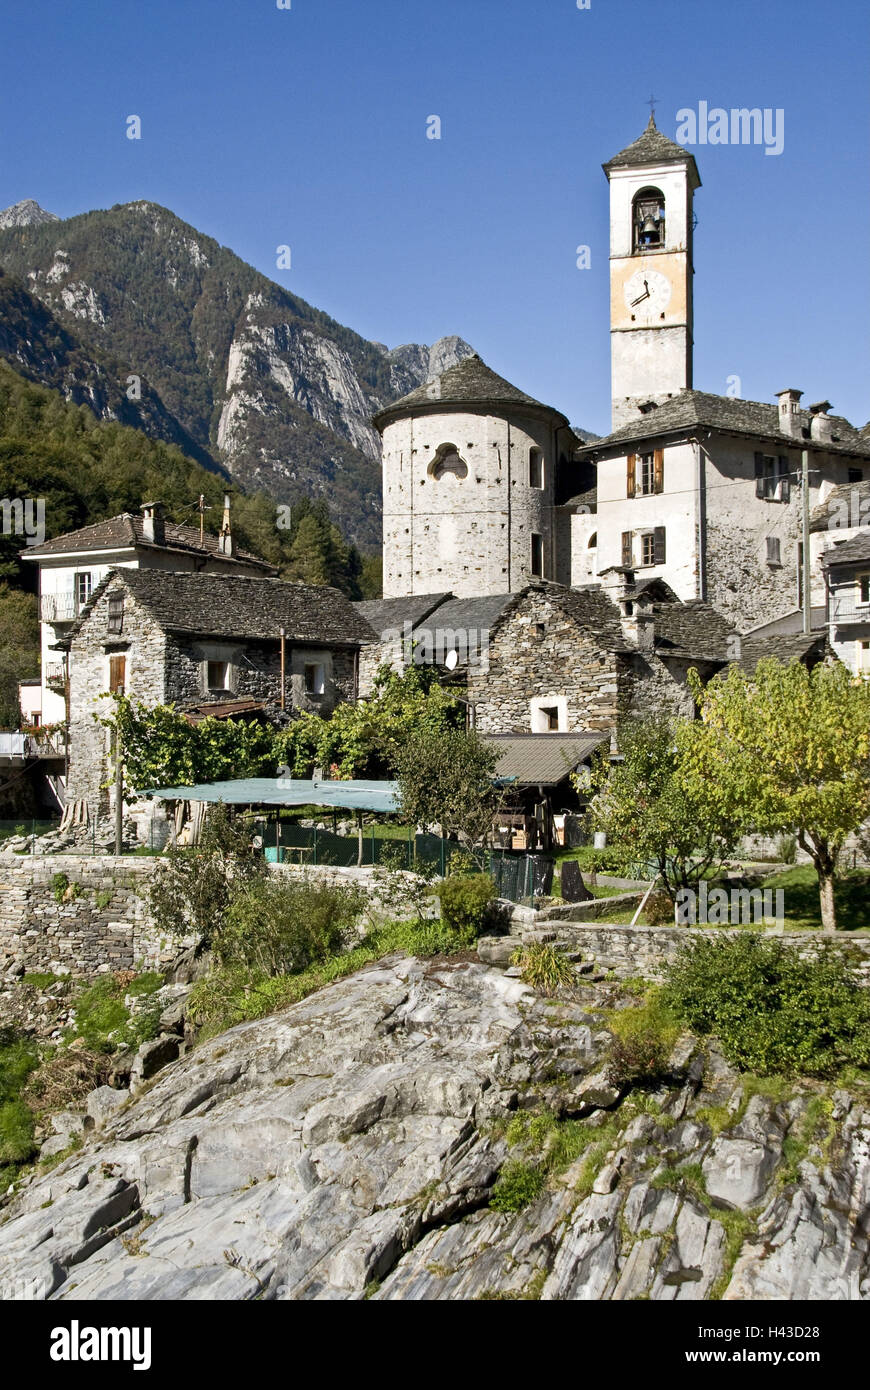 Suisse, Tessin, vallée de Verzasca, Lavertezzo, vue locale, l'église paroissiale'Maria degli Angeli', 15. 100., Banque D'Images